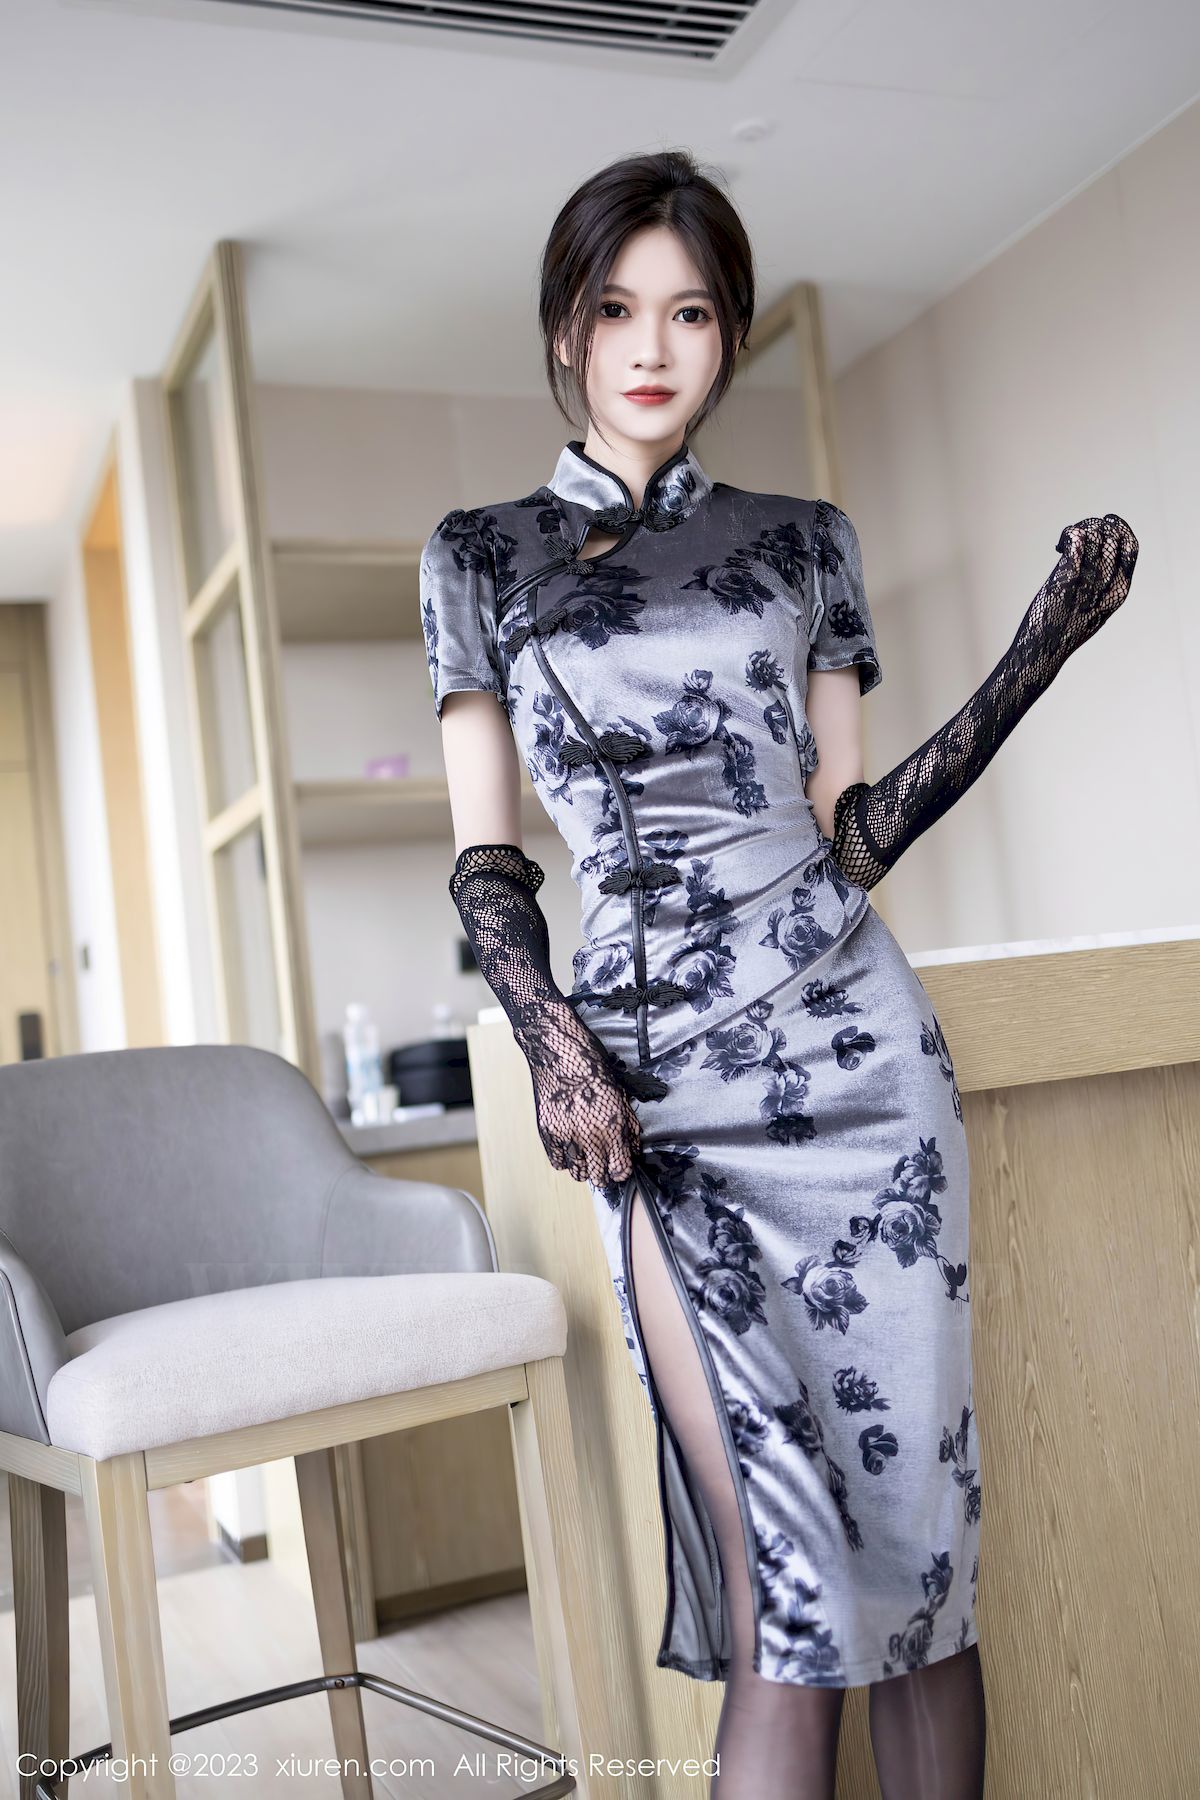 程程程-薄纱旗袍服饰搭配黑丝性感写真